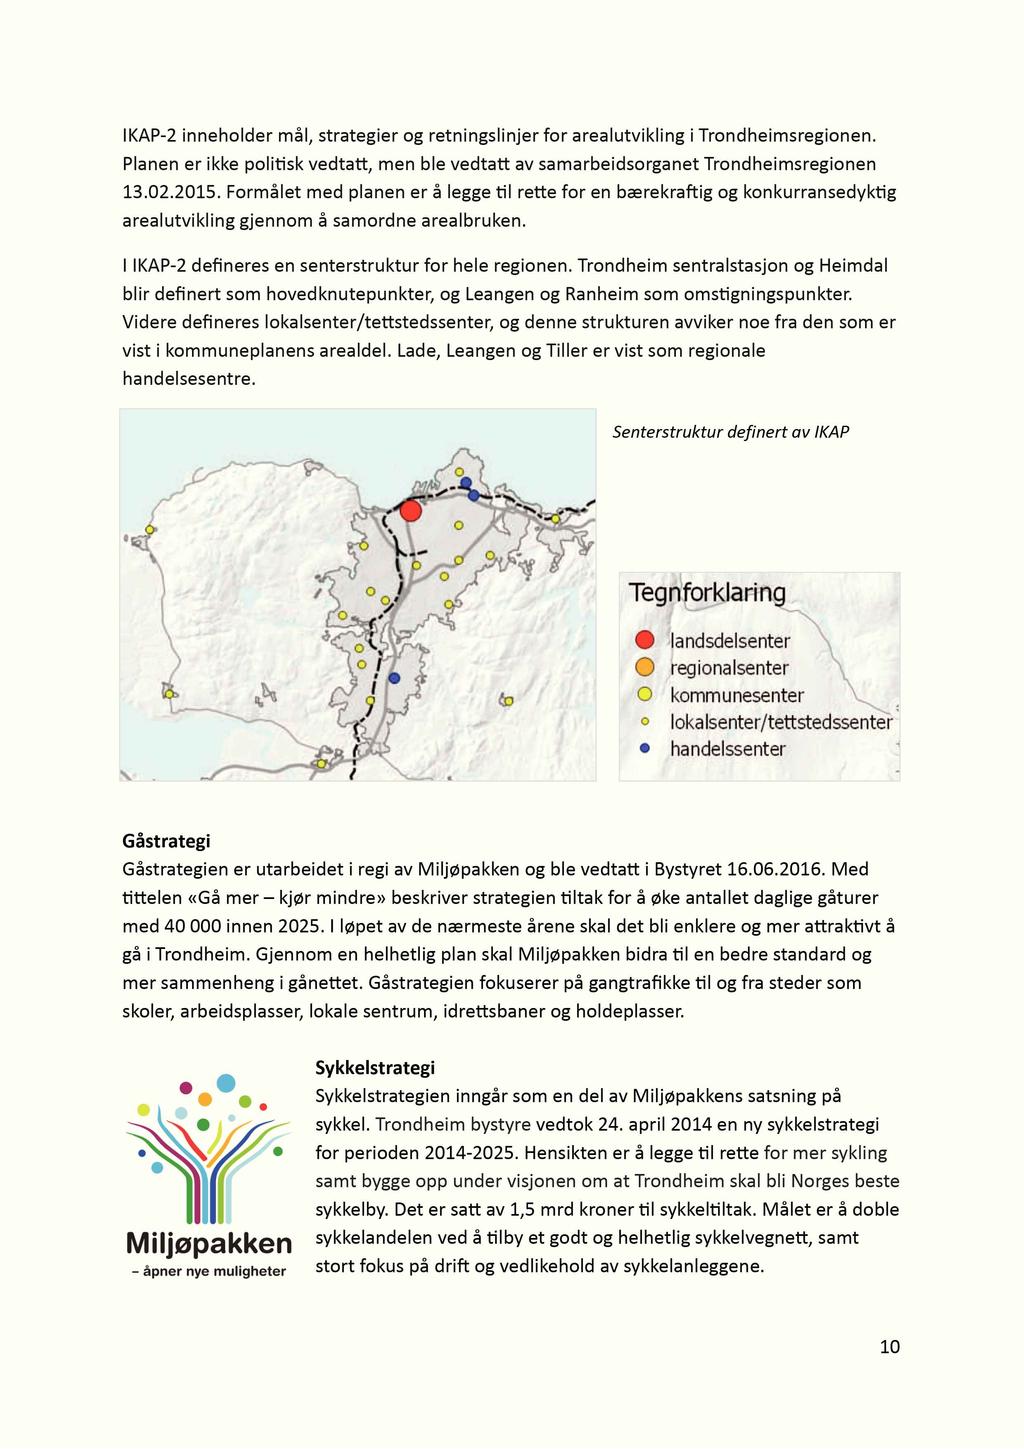 IKAP-2 inneholder mål, strategier og retningslinjer for arealutvikling i Trondheimsregionen. Planen er ikke poli sk vedta, men ble vedta av samarbeidsorganet Trondheimsregionen 13.02.2015.